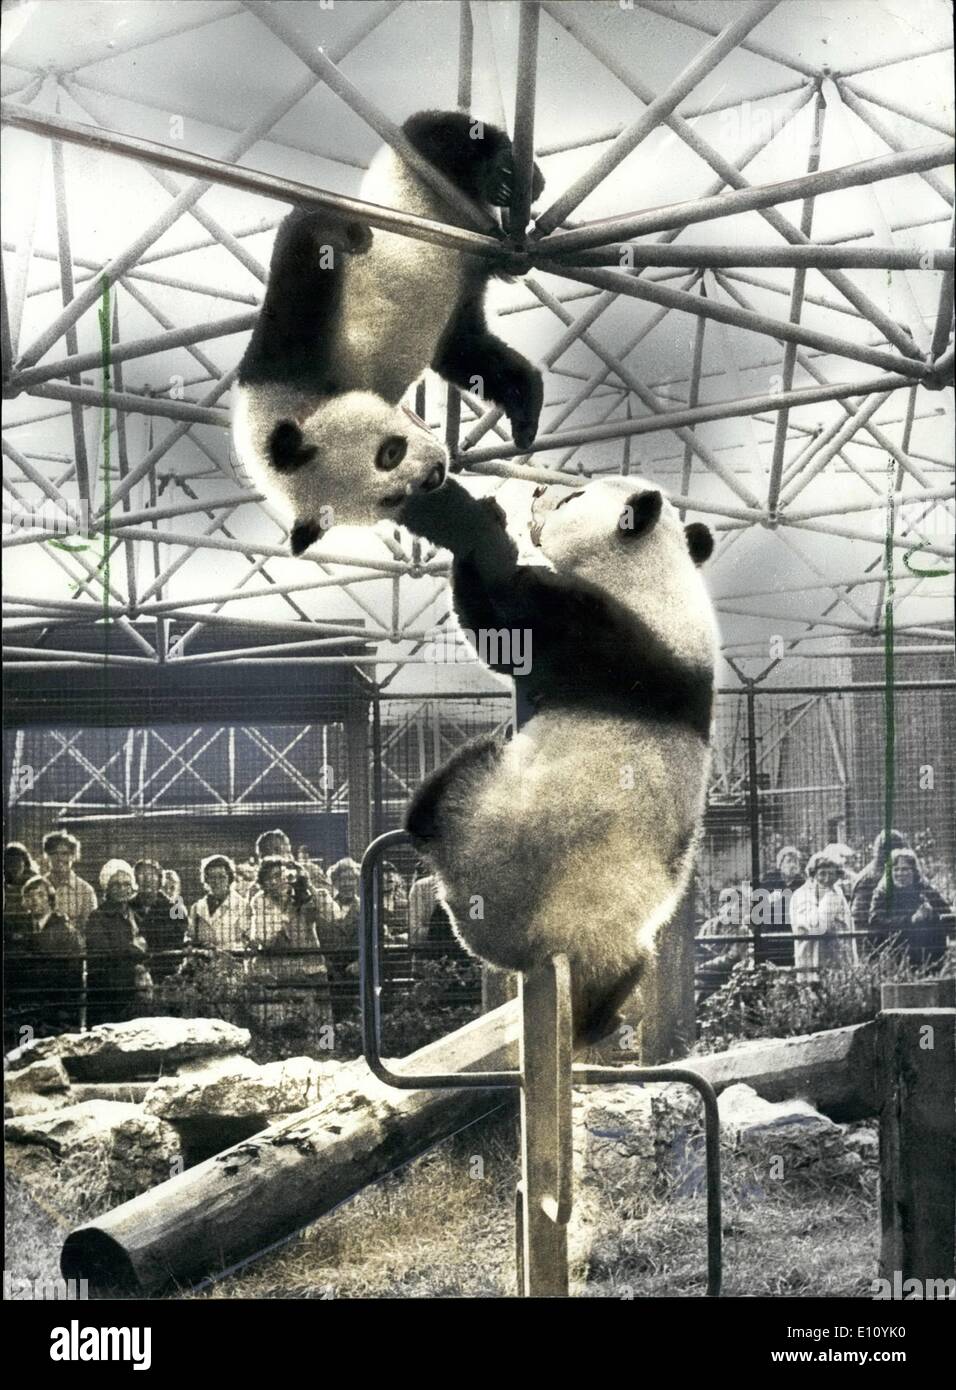 10 octobre 1974 - Jeux et divertissements pour Ching-Ching et Chia-Chia:Deux études de Ching-Ching et Chia-Chia, le panda cadeaux de Chine, représenté comme ils bénéficient d'une session de jeux et dans leur enclos au Zoo de Londres. Banque D'Images